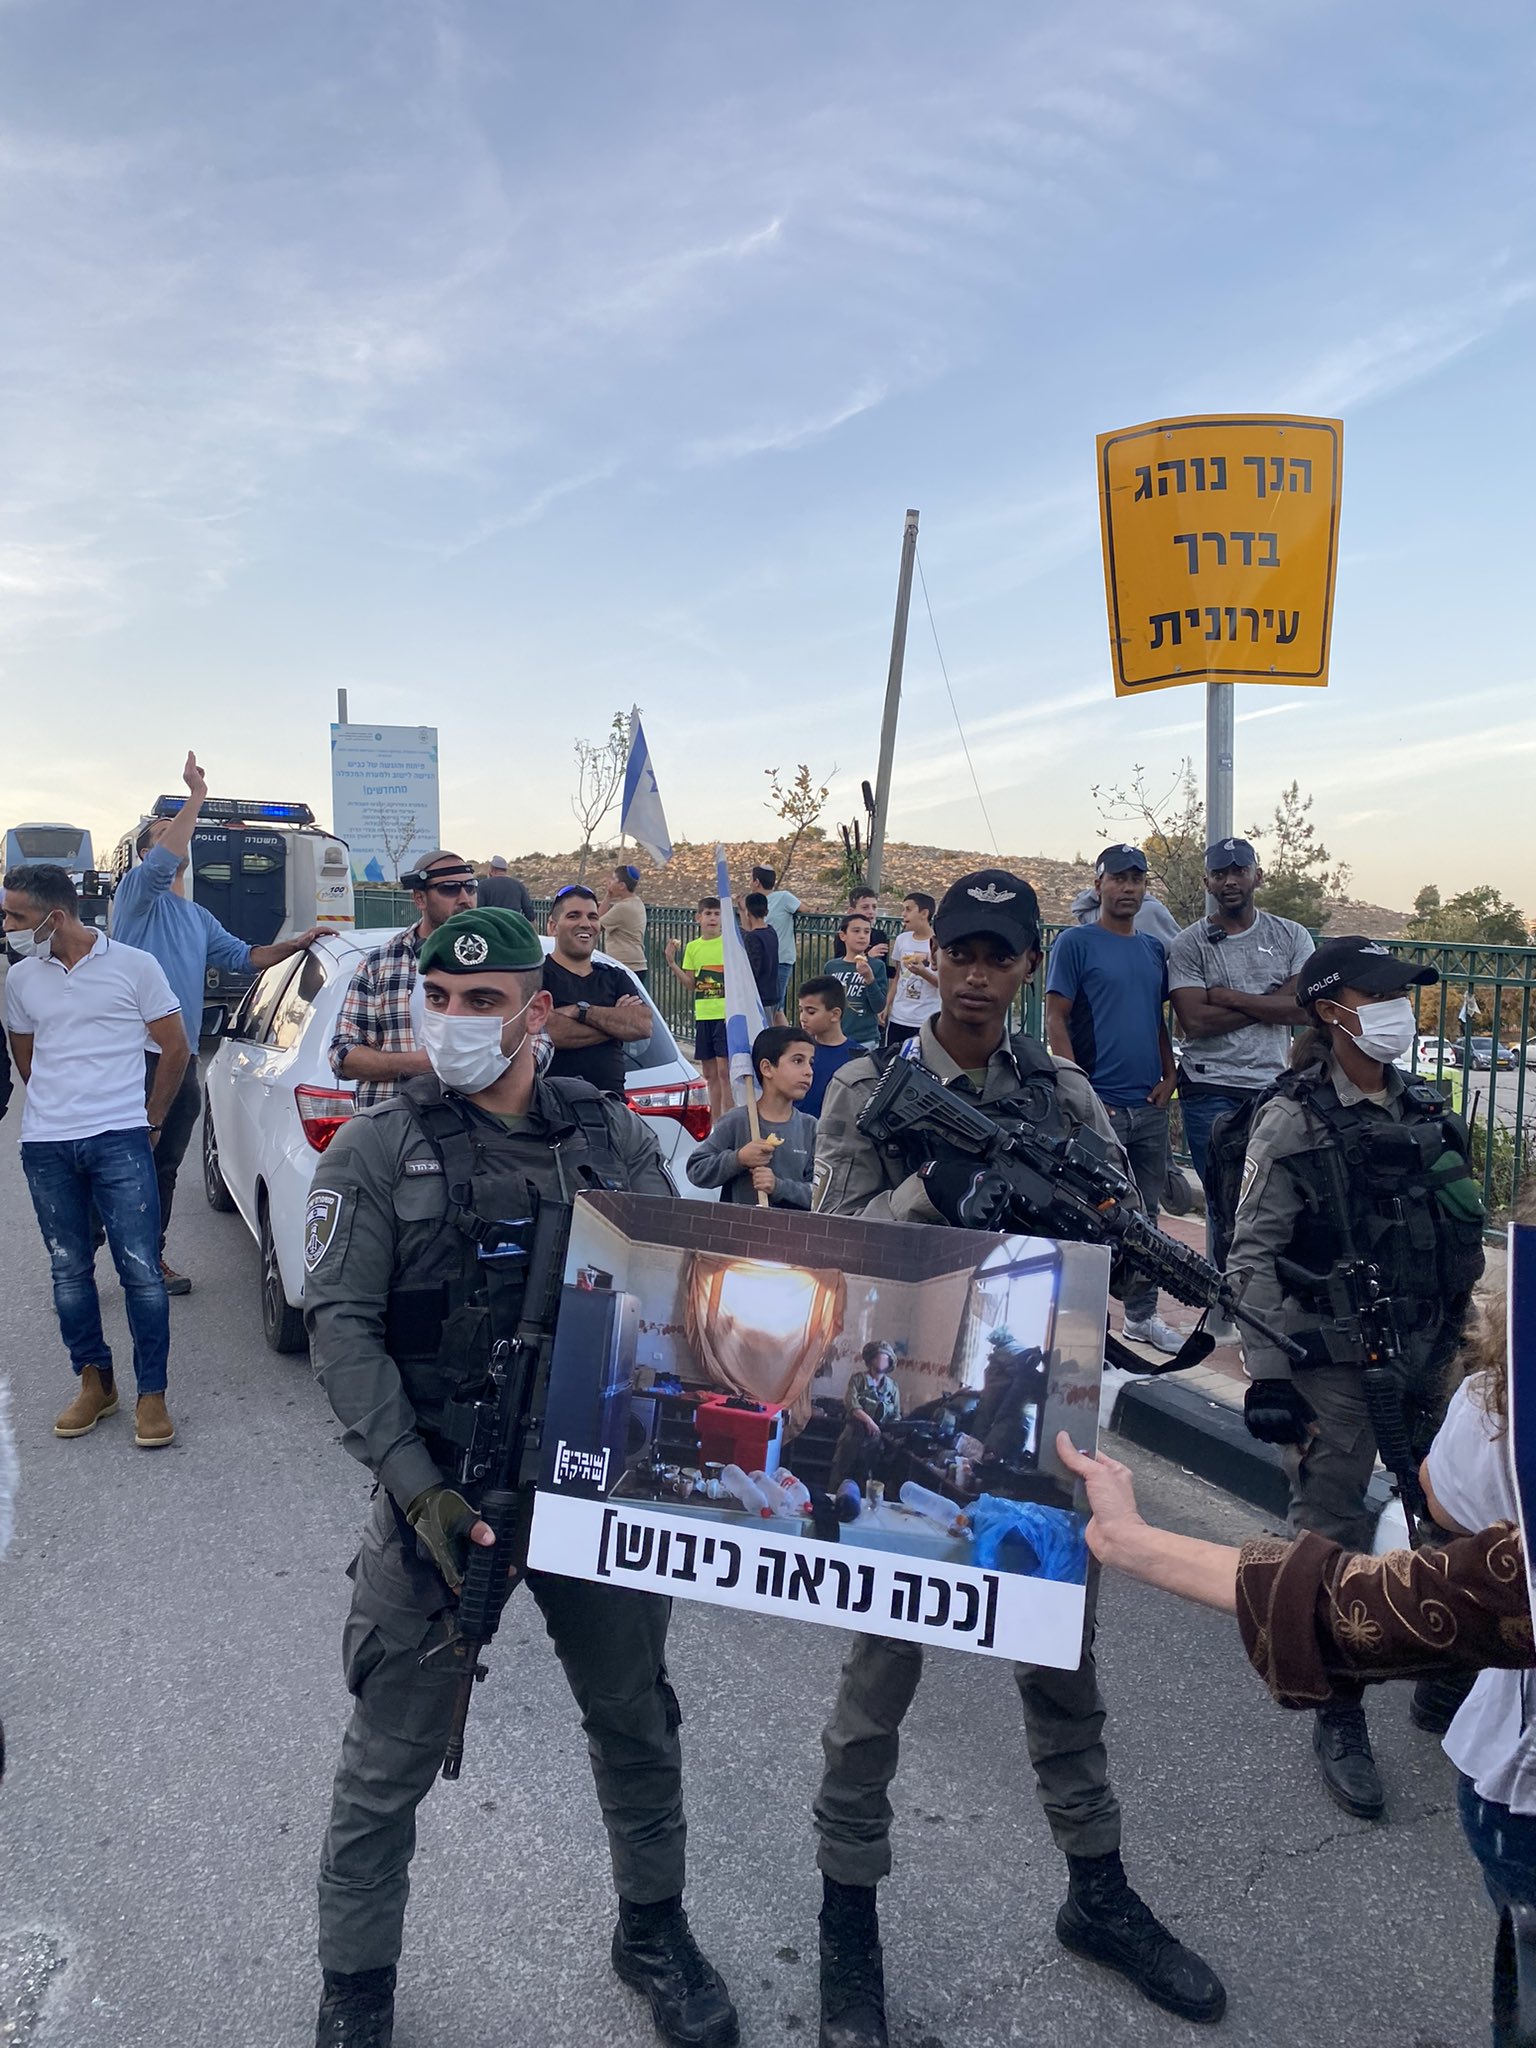 Un manifestante mette un cartello davanti ai soldati israeliani con la scritta "Ecco come appare l'occupazione", durante una manifestazione contro la visita del presidente Isaac Herzog a una cerimonia di Hanukkah a Hebron, 28 novembre 2021. (Ben Reiff)